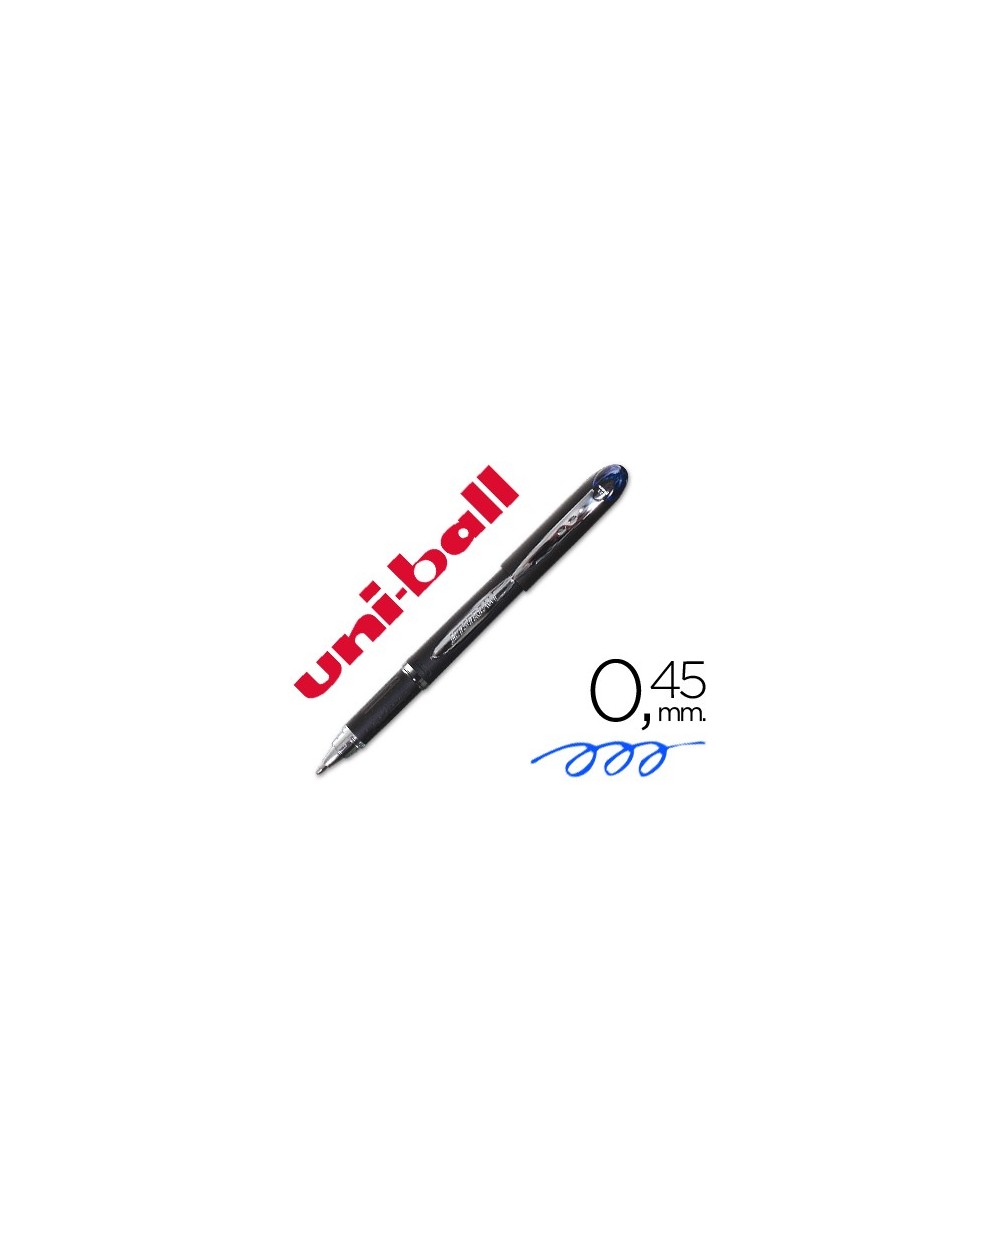 Rotulador uni ball roller sx 210 tinta hibrida azul